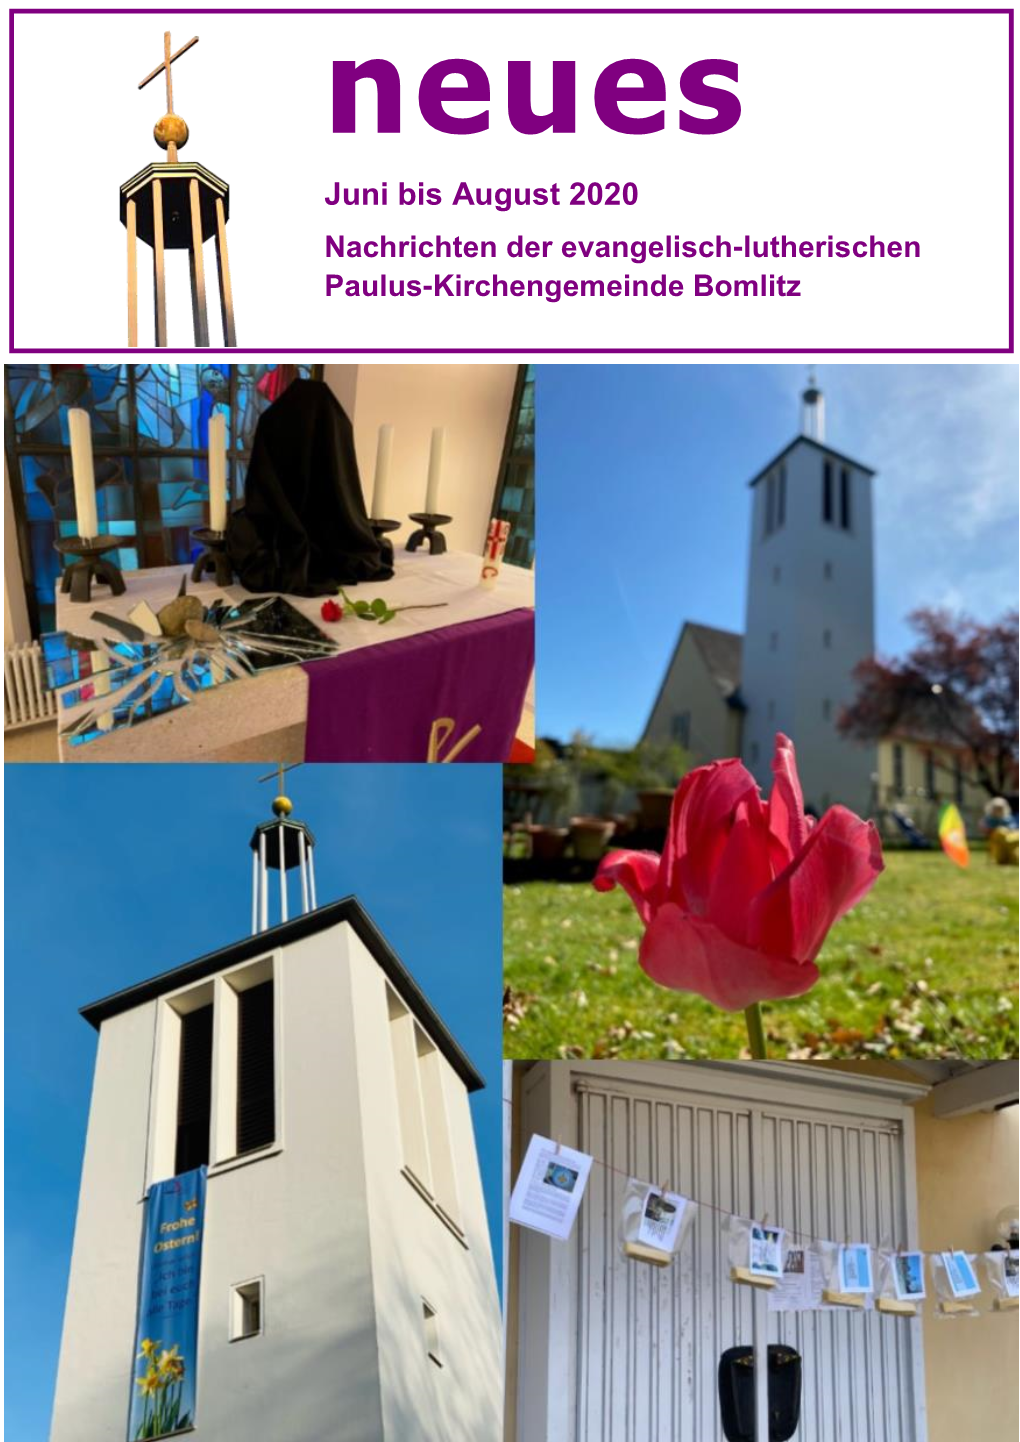 Juni Bis August 2020 Nachrichten Der Evangelisch-Lutherischen Paulus-Kirchengemeinde Bomlitz Inhaltsverzeichnis